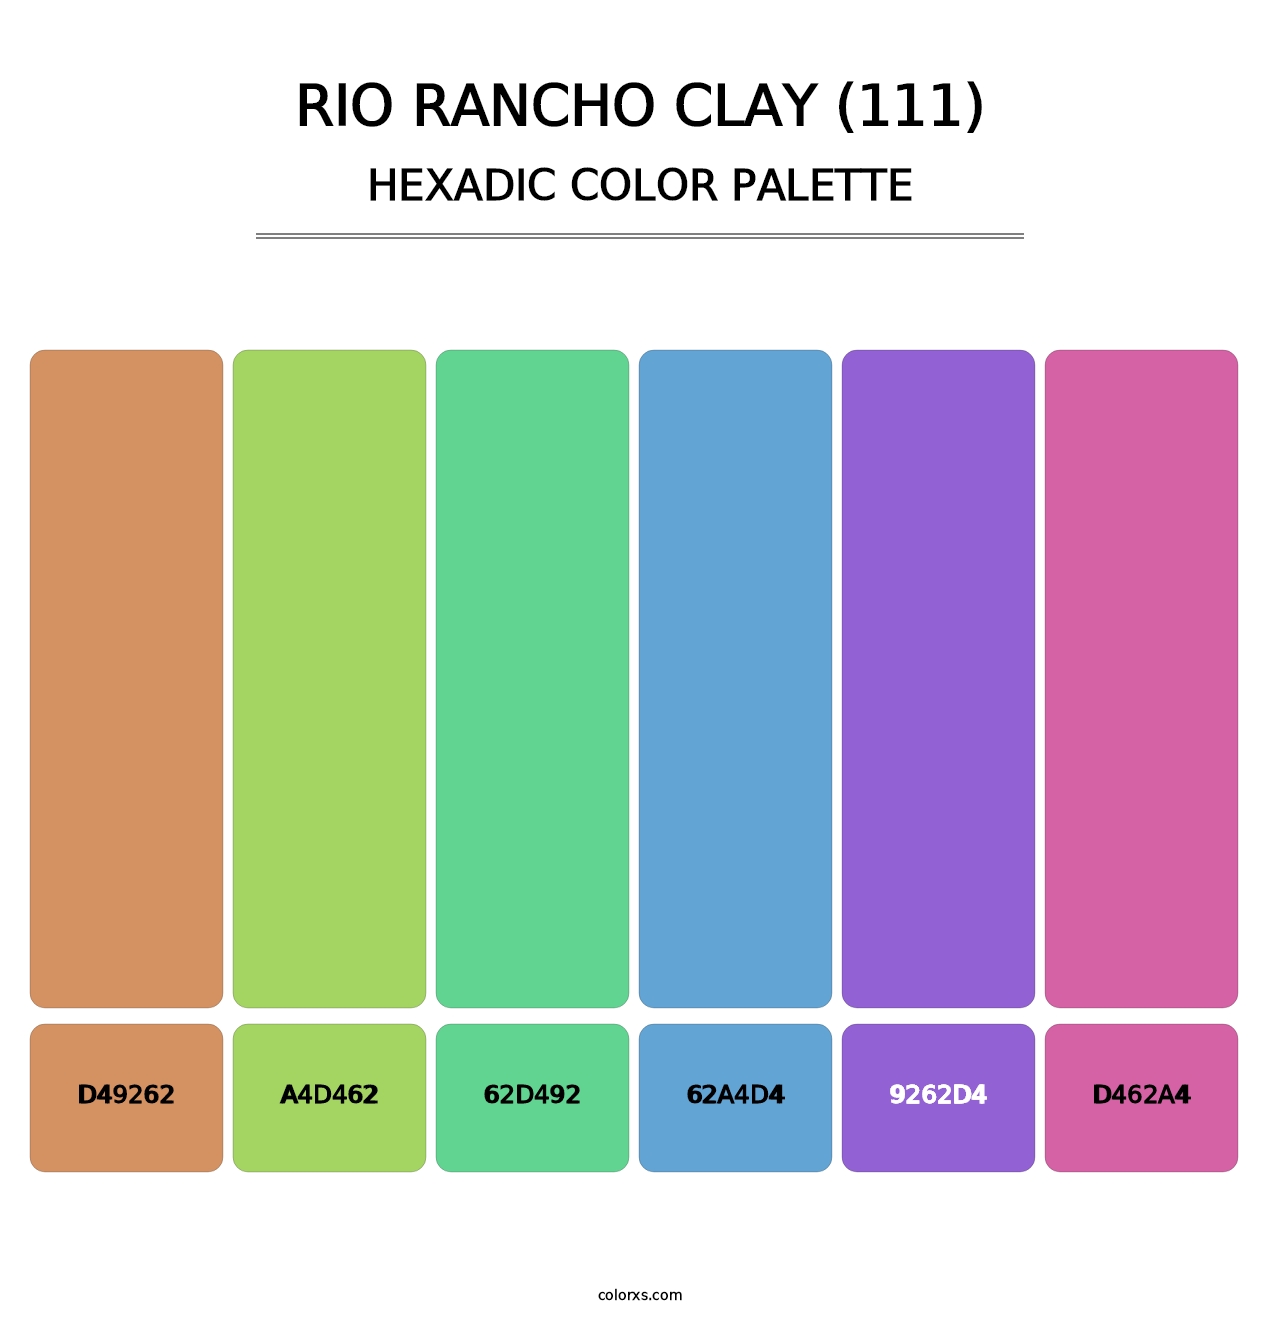 Rio Rancho Clay (111) - Hexadic Color Palette